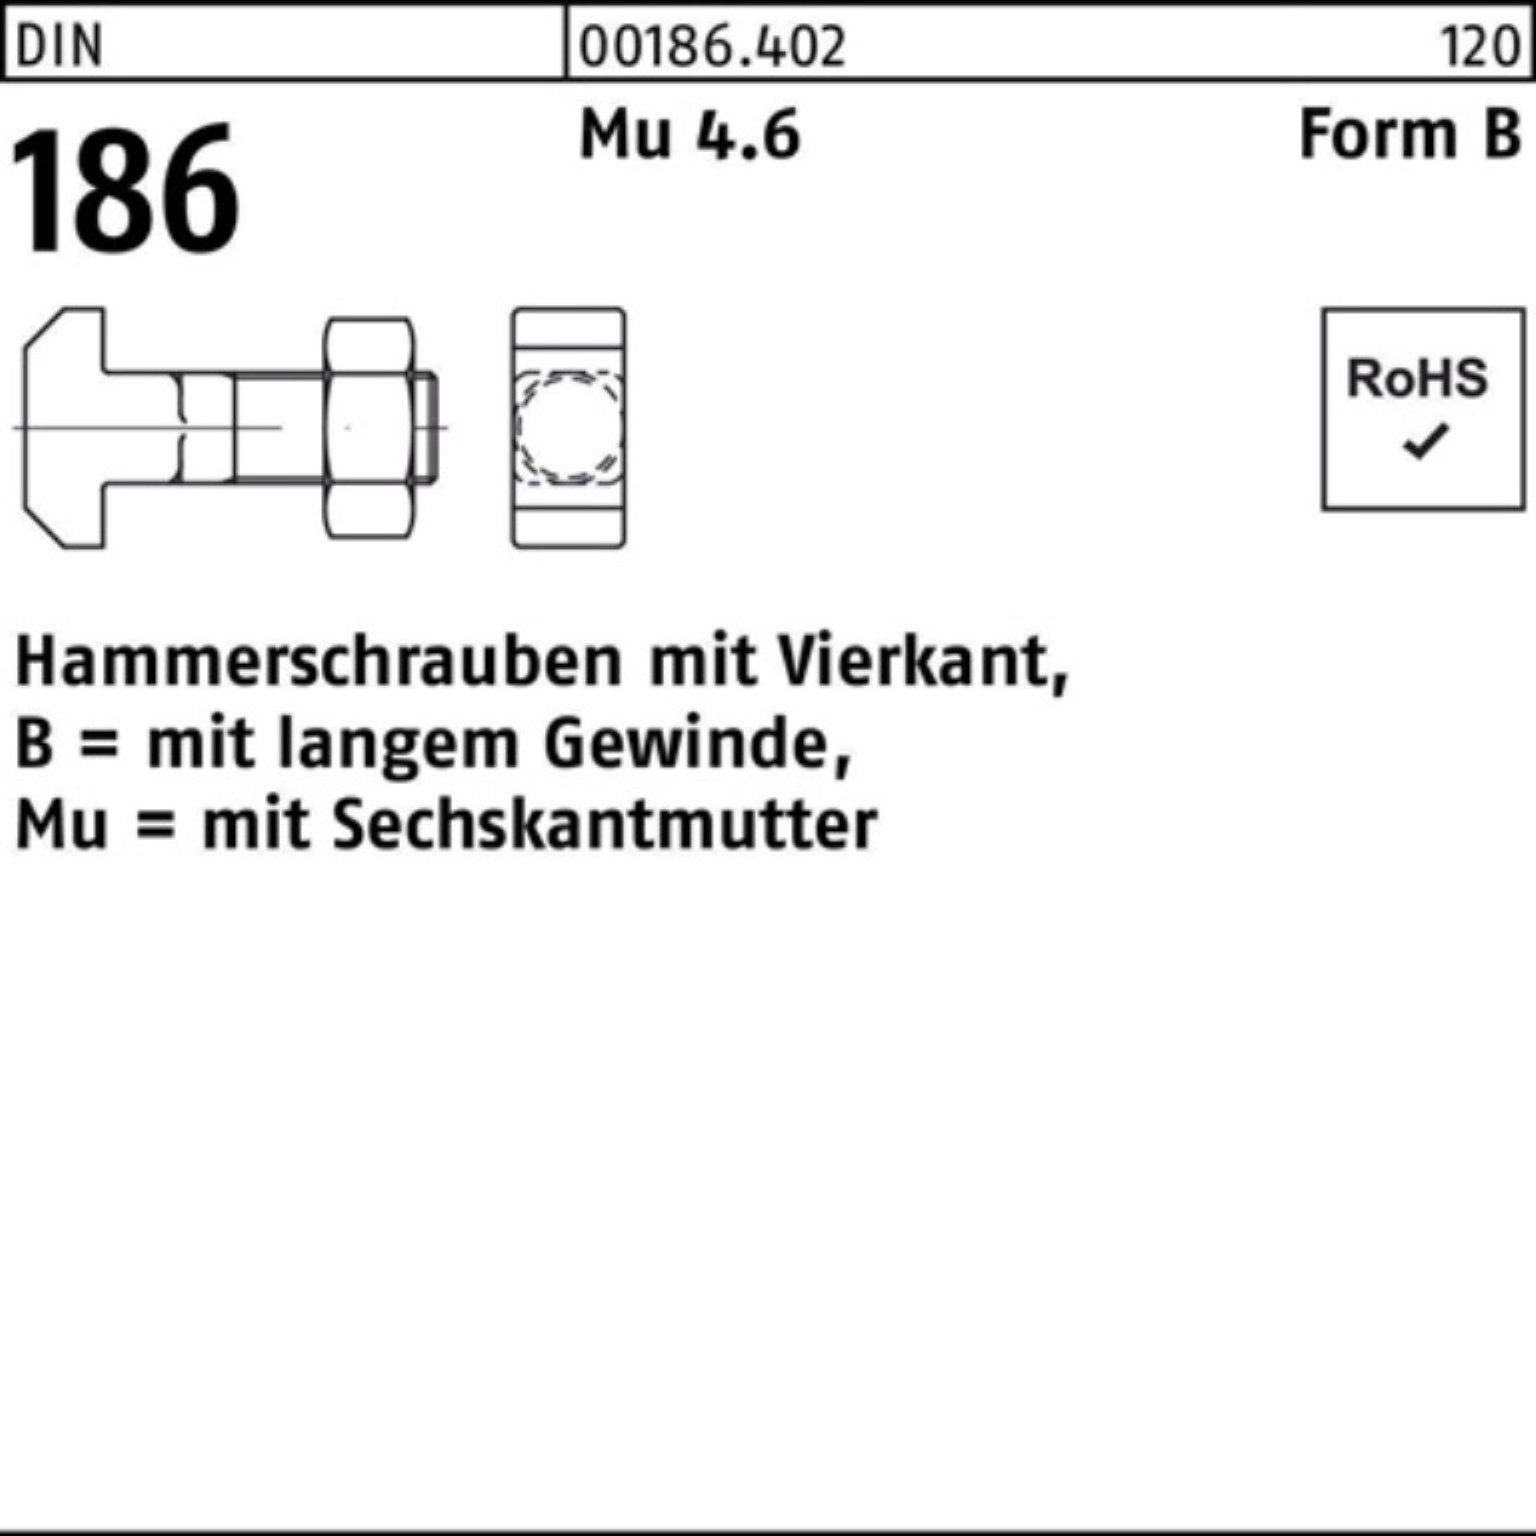 Reyher Schraube 100er 12x FormB DIN Pack Vierkant 186 110 BM Hammerschraube 6-ktmutter